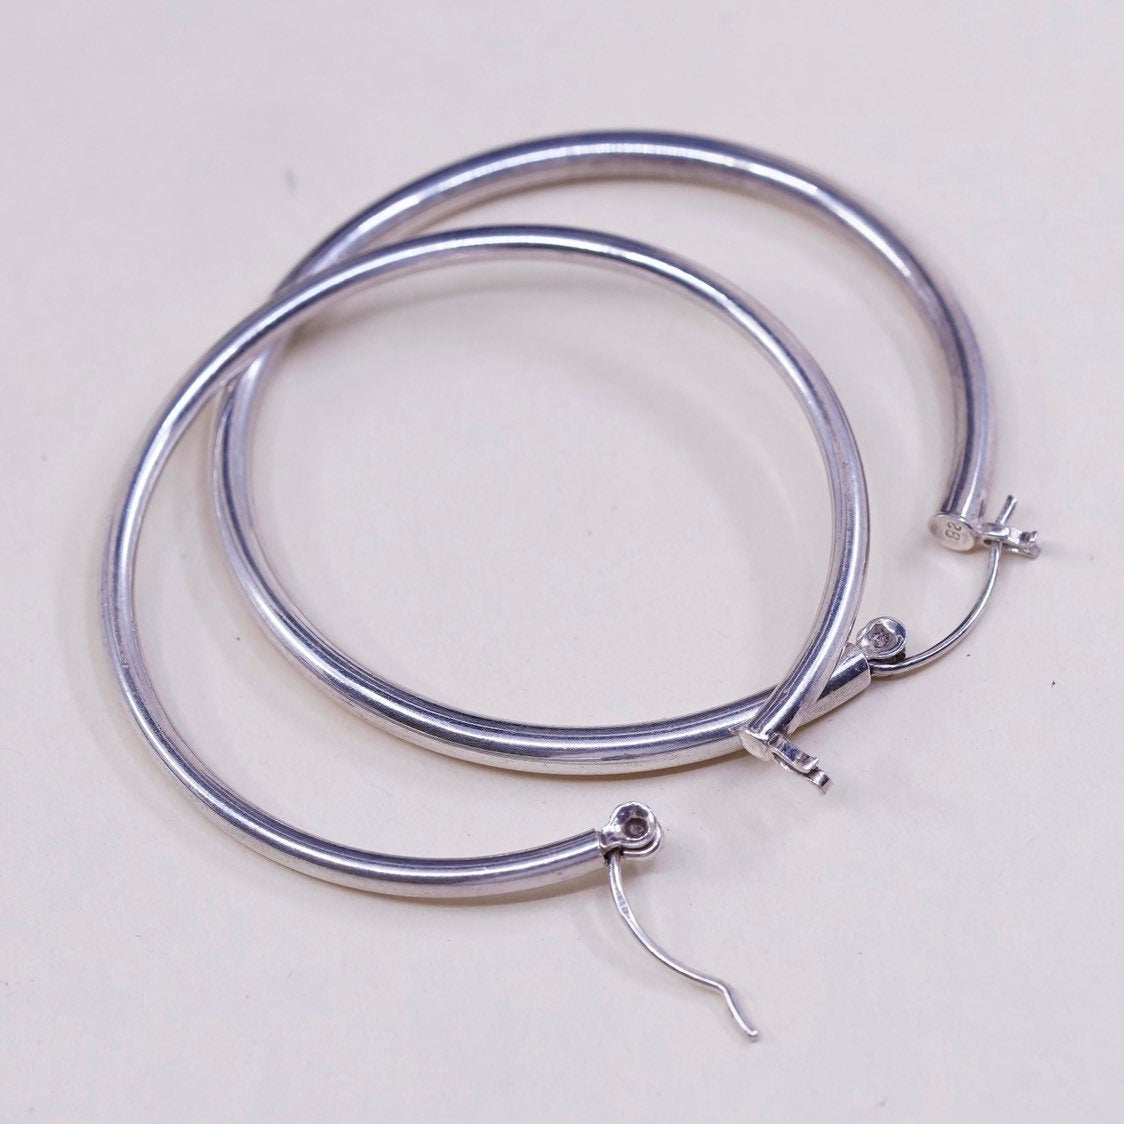 1.75" vtg sterling silver loop earrings, fashion primitive hoops